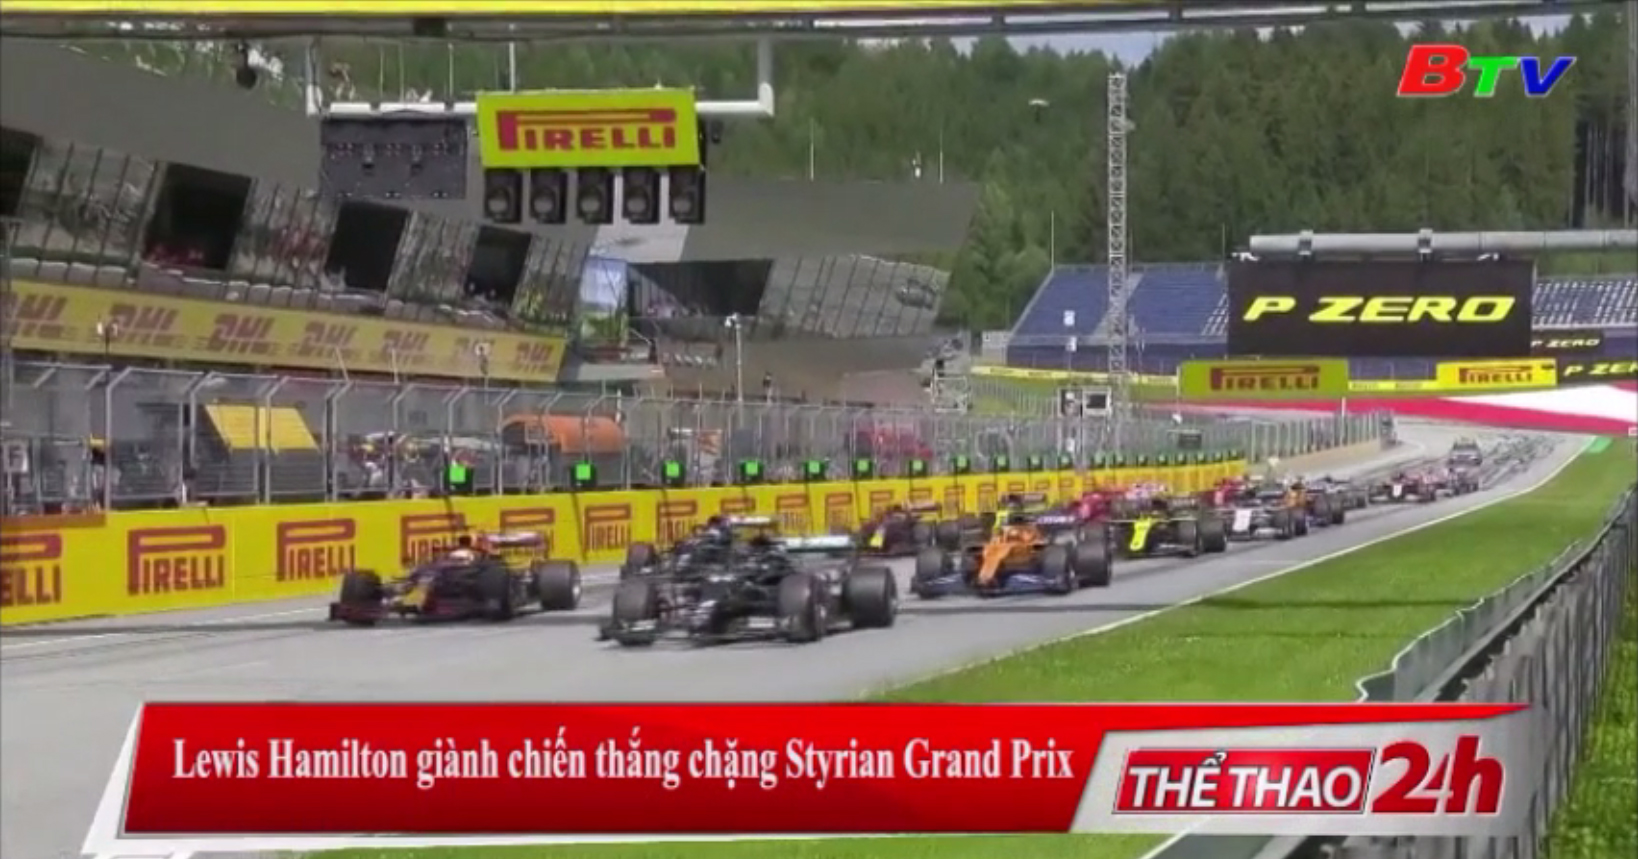 Lewis Hamilton giành chiến thắng chặng Styrian Grand Prix